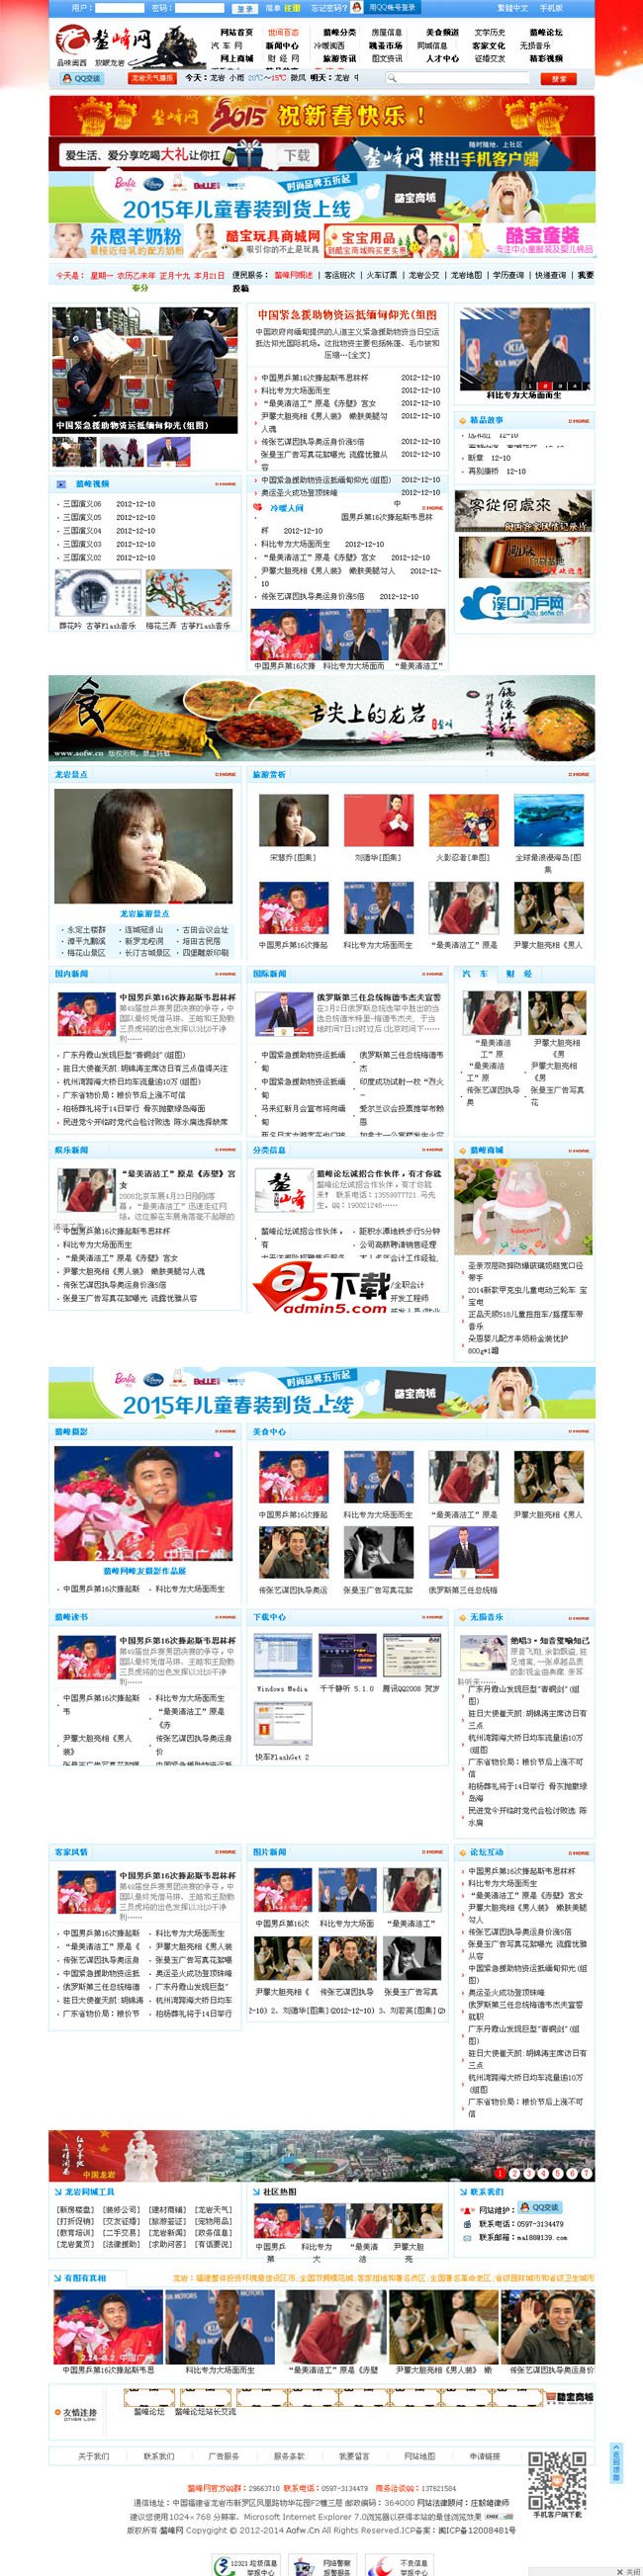 仿鳌峰网整站2015中国红版 v7.2插图源码资源库